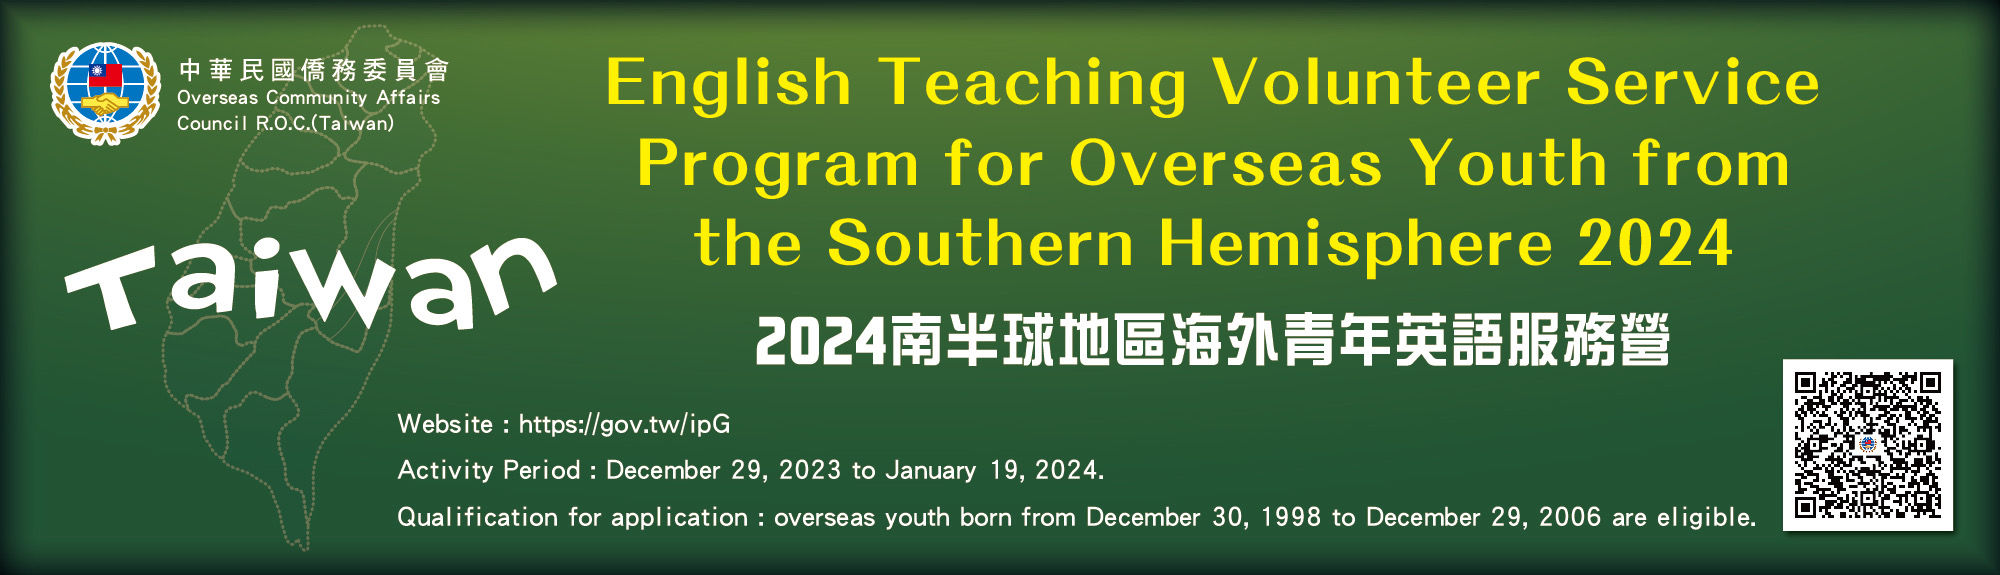 2024年南半球地區海外青年英語服務營活動資訊